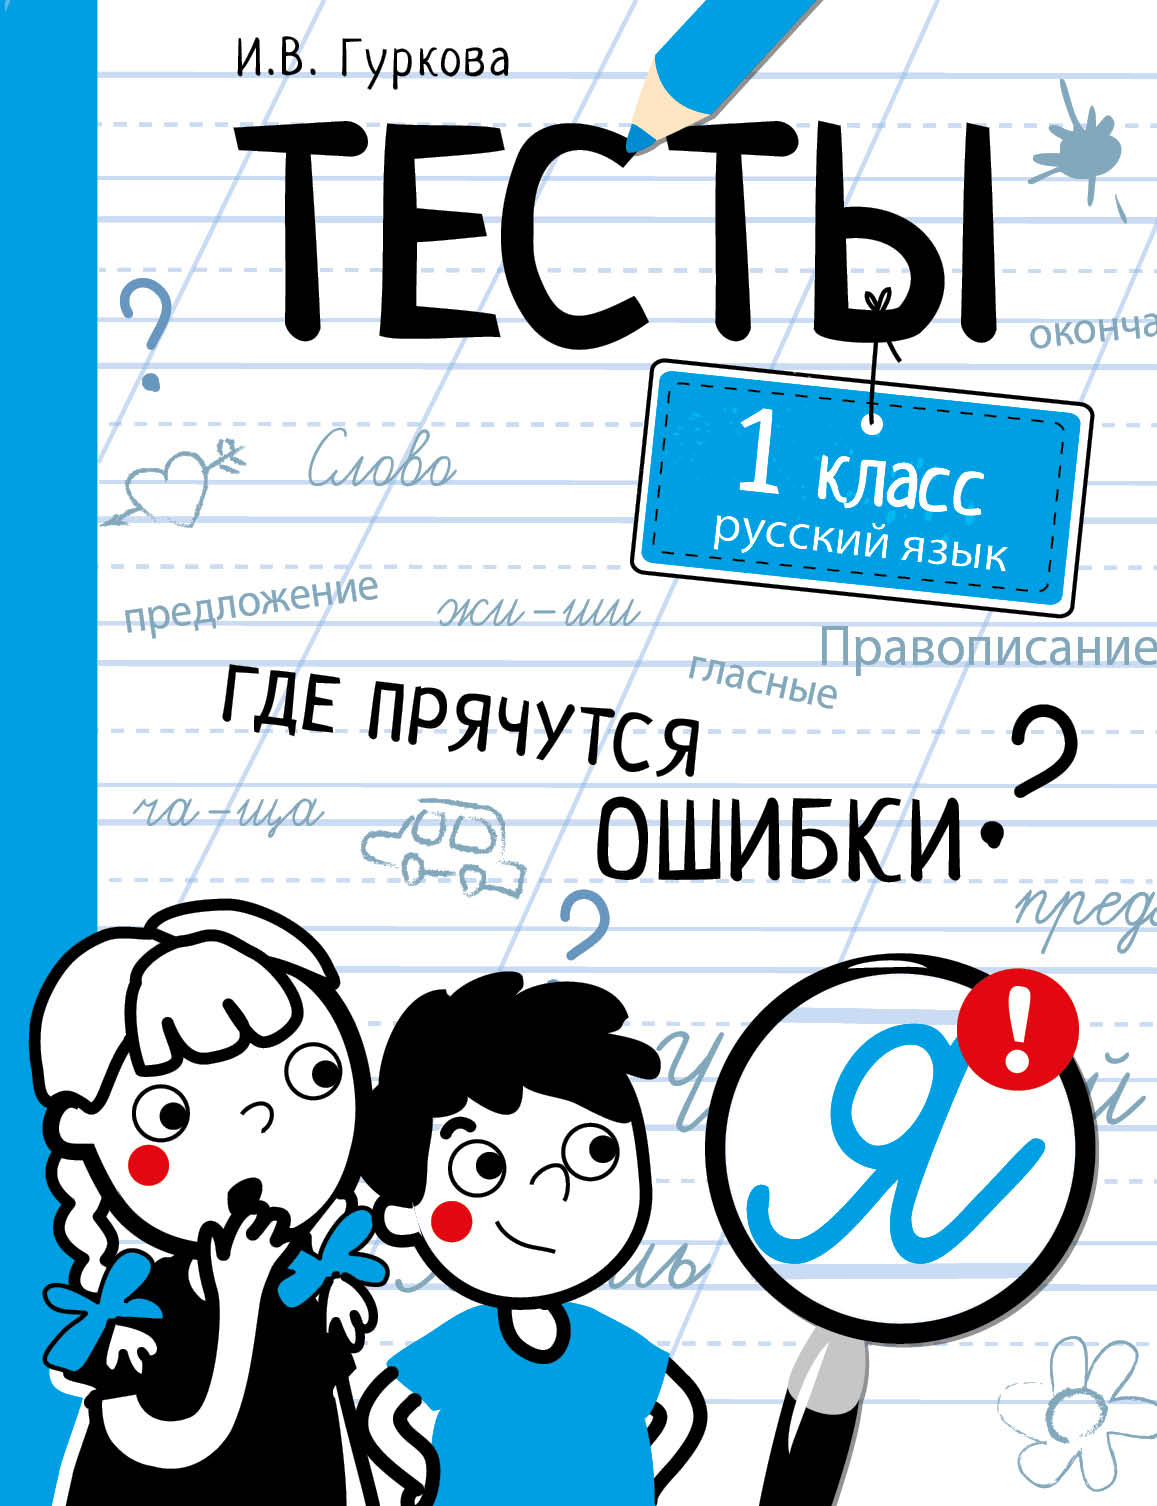 Русский язык. 1 кл.: Тесты